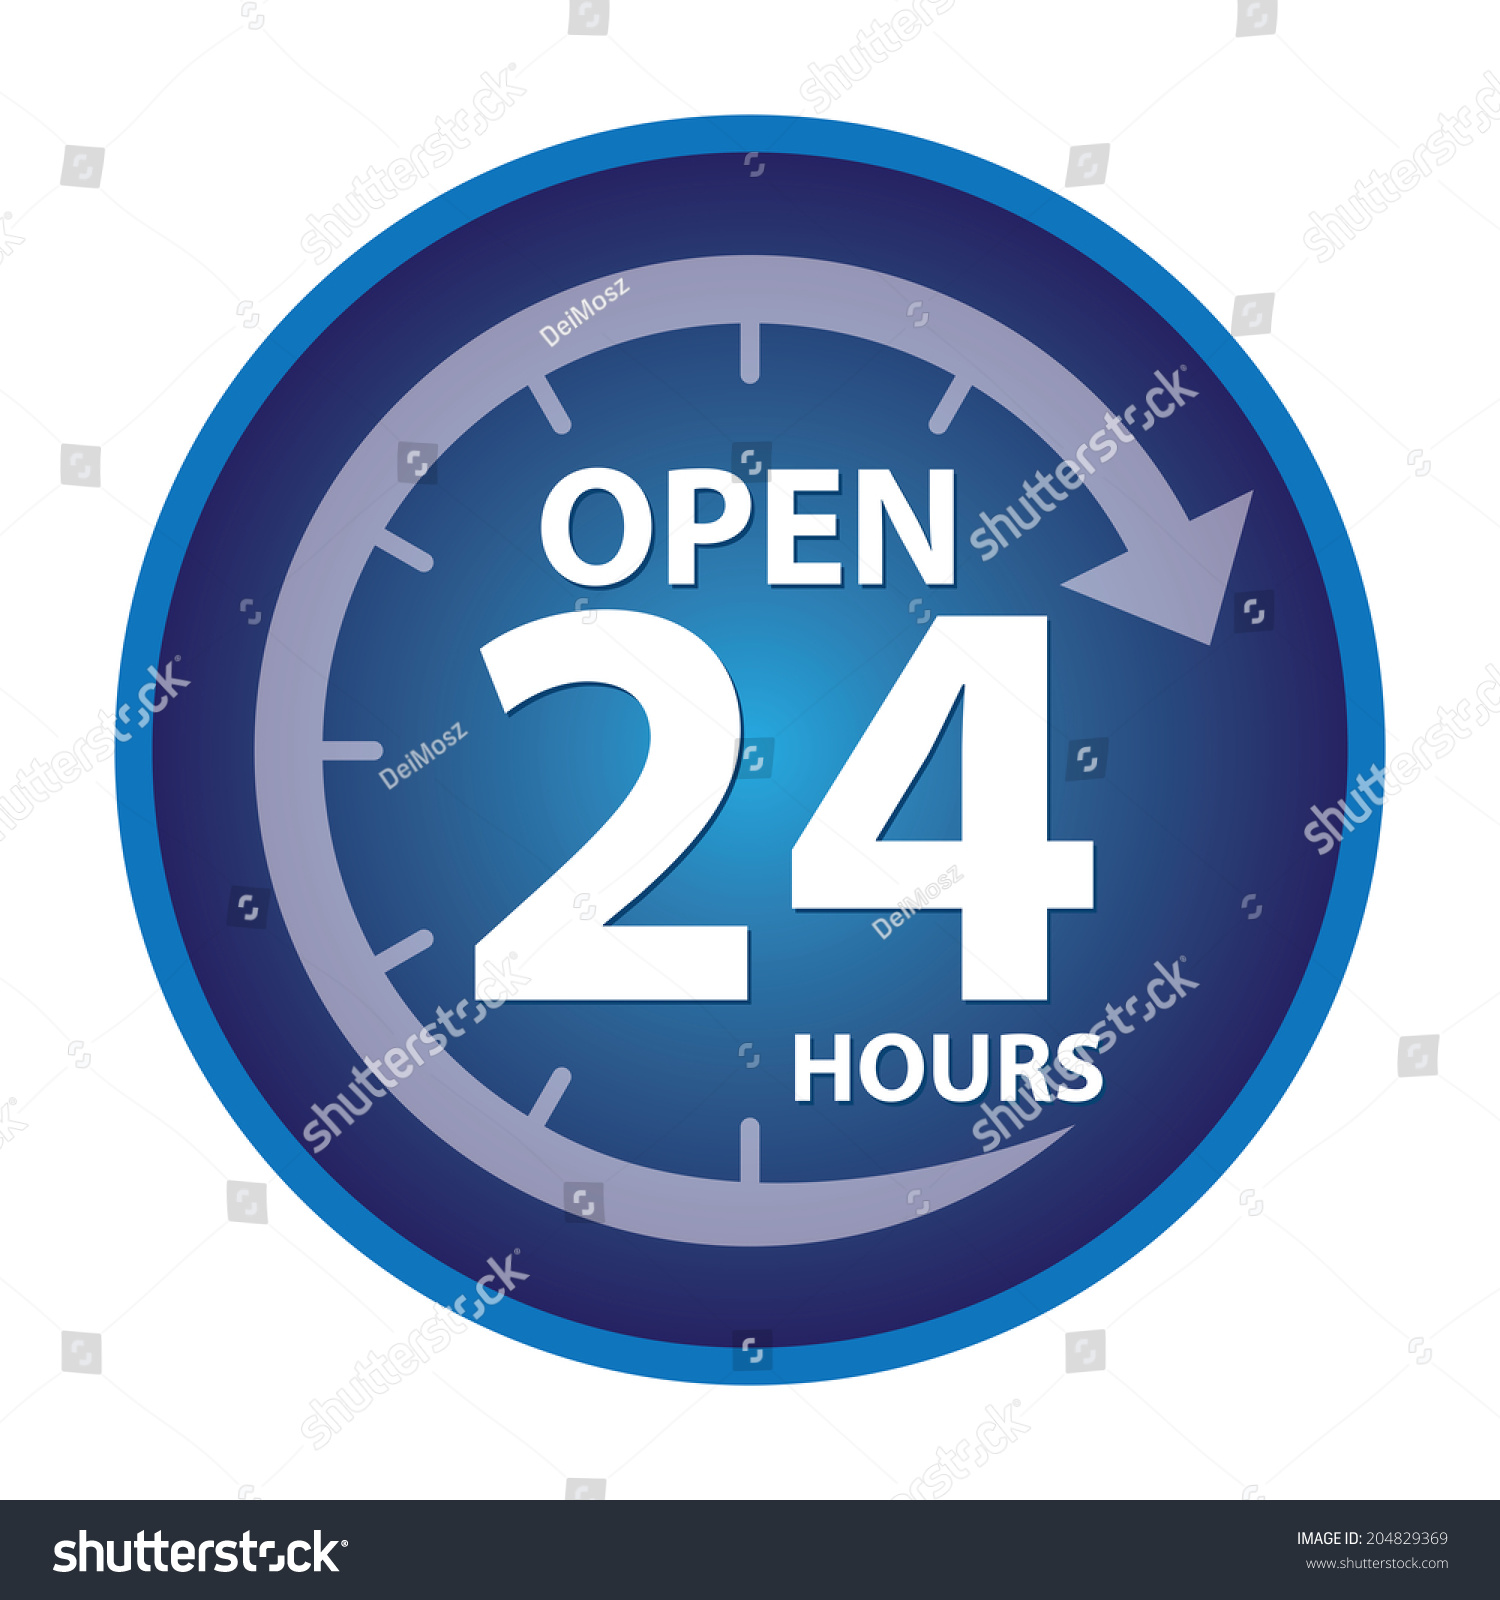 Открыть 24 опен. 24 Часа open. 24 Часа лого. Open 24/7. Open 24 hours.